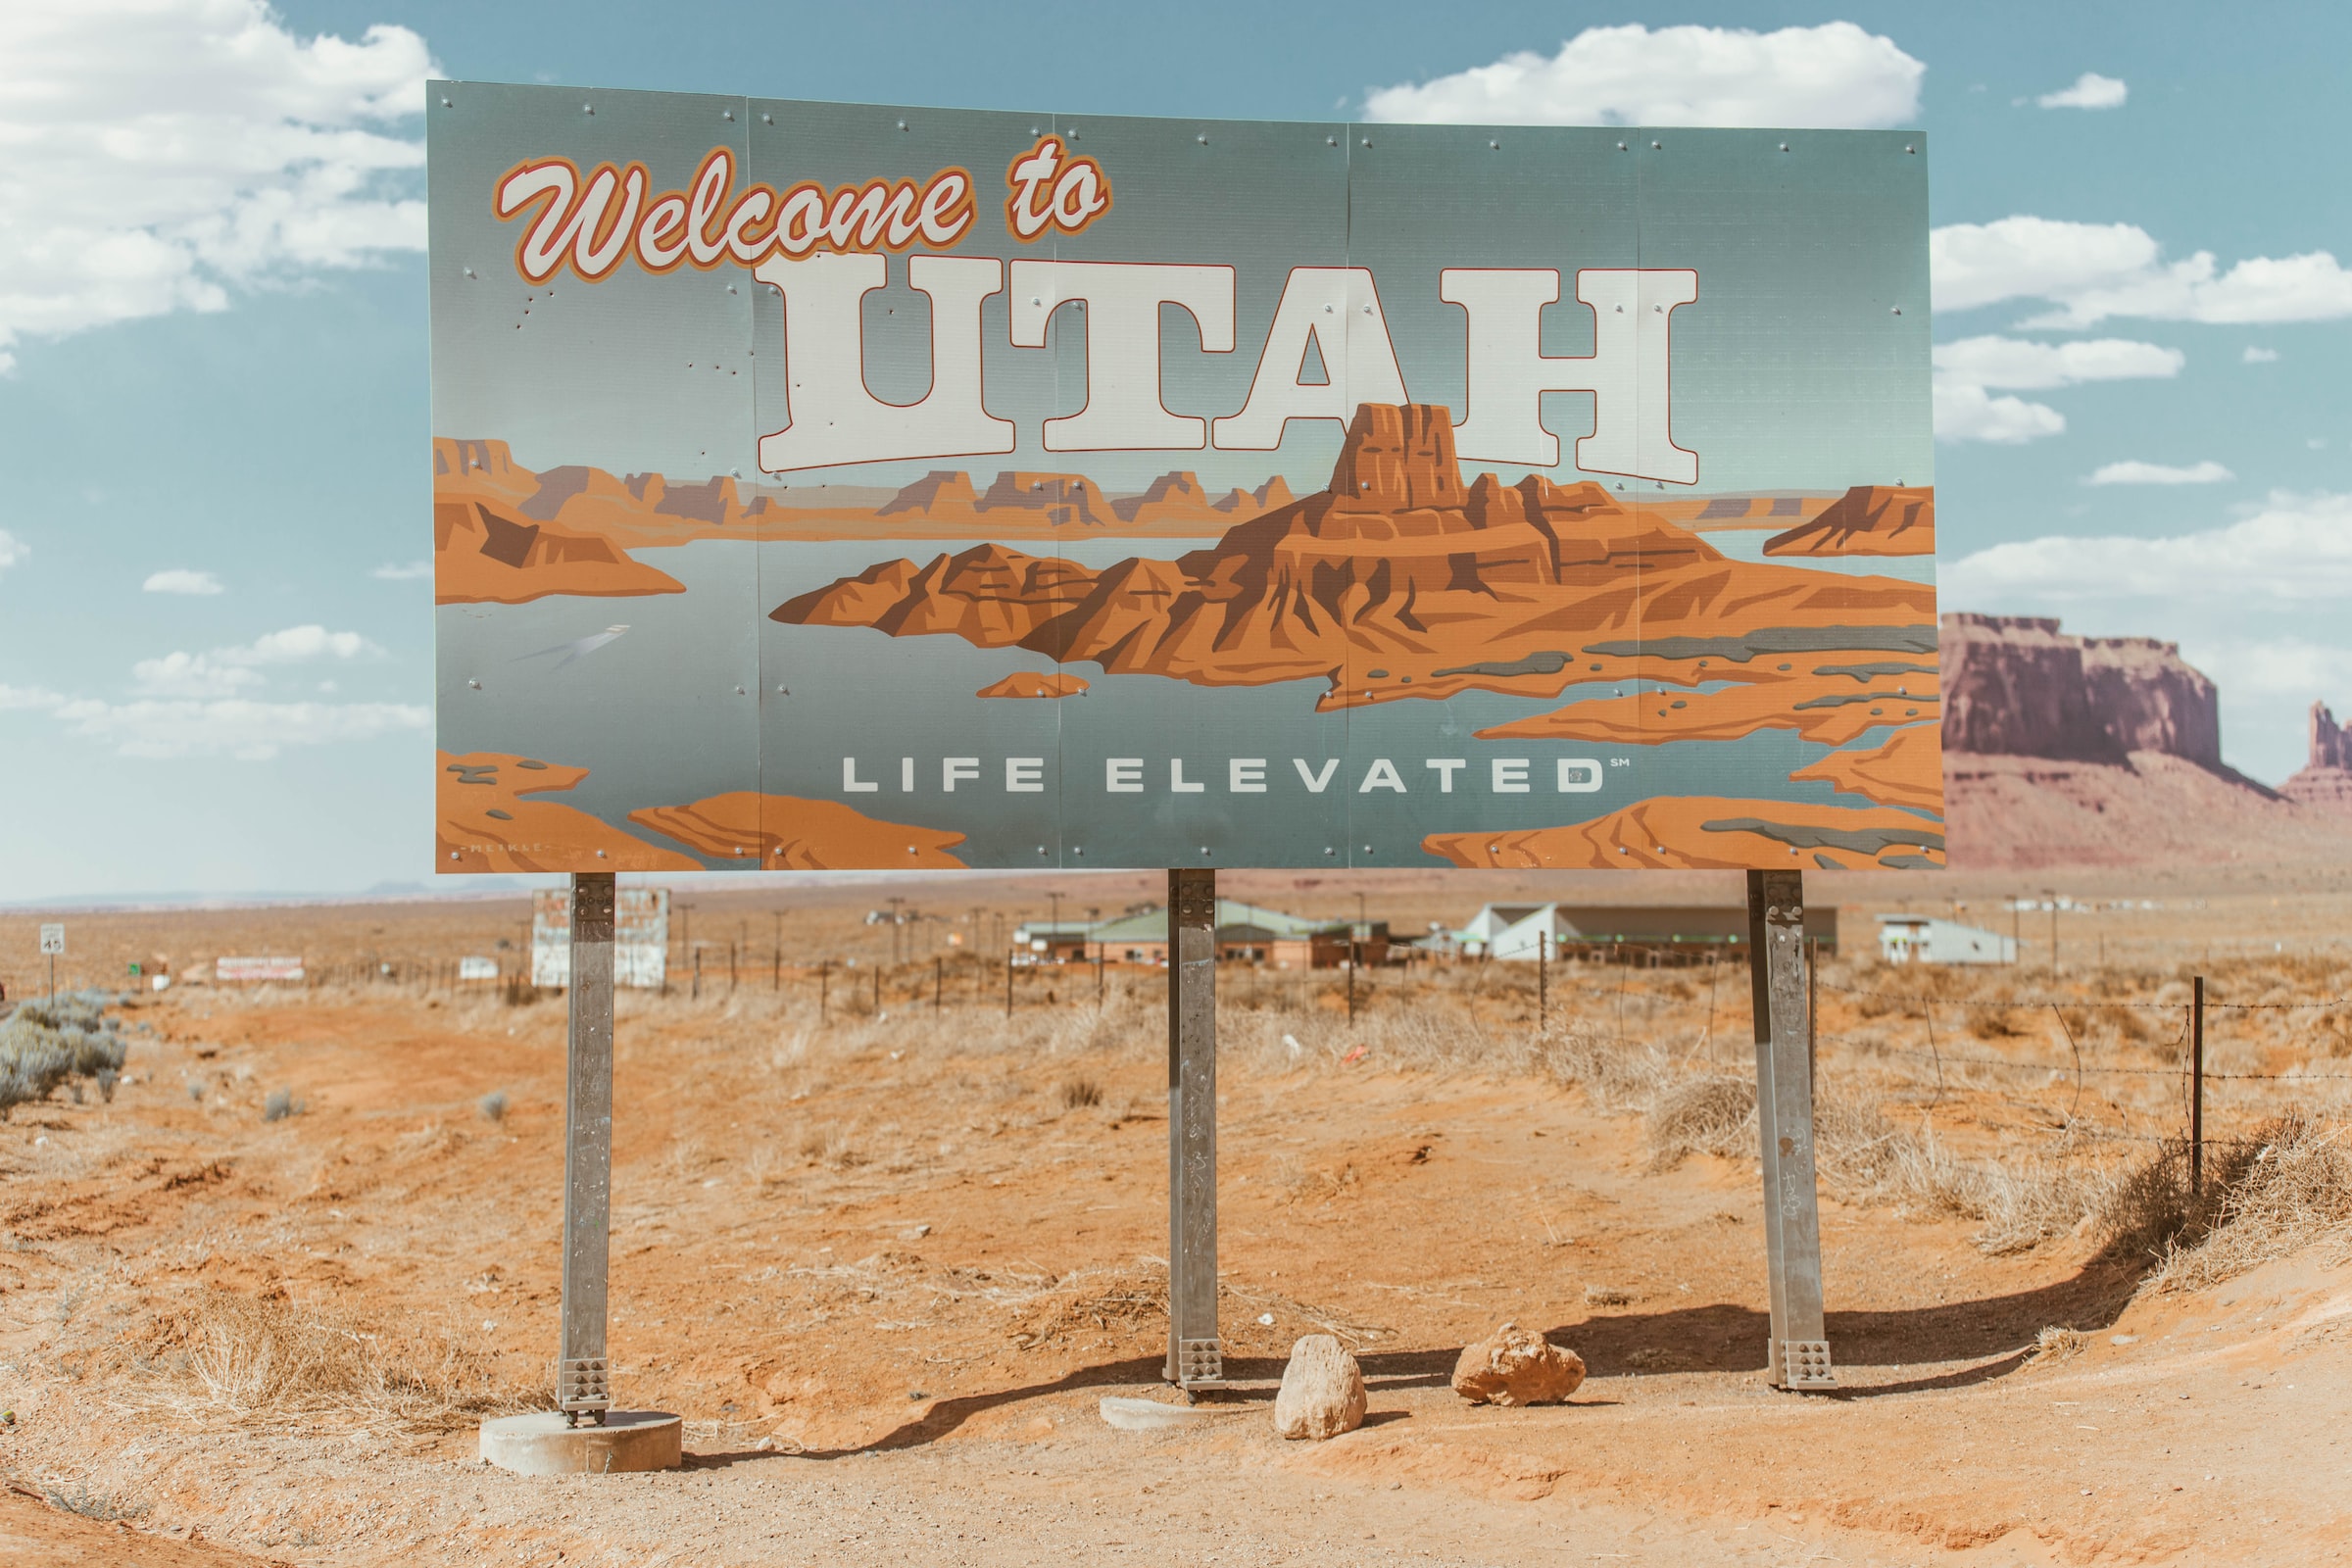 Utah To Home World’s Largest Underground Hydrogen Storage Project